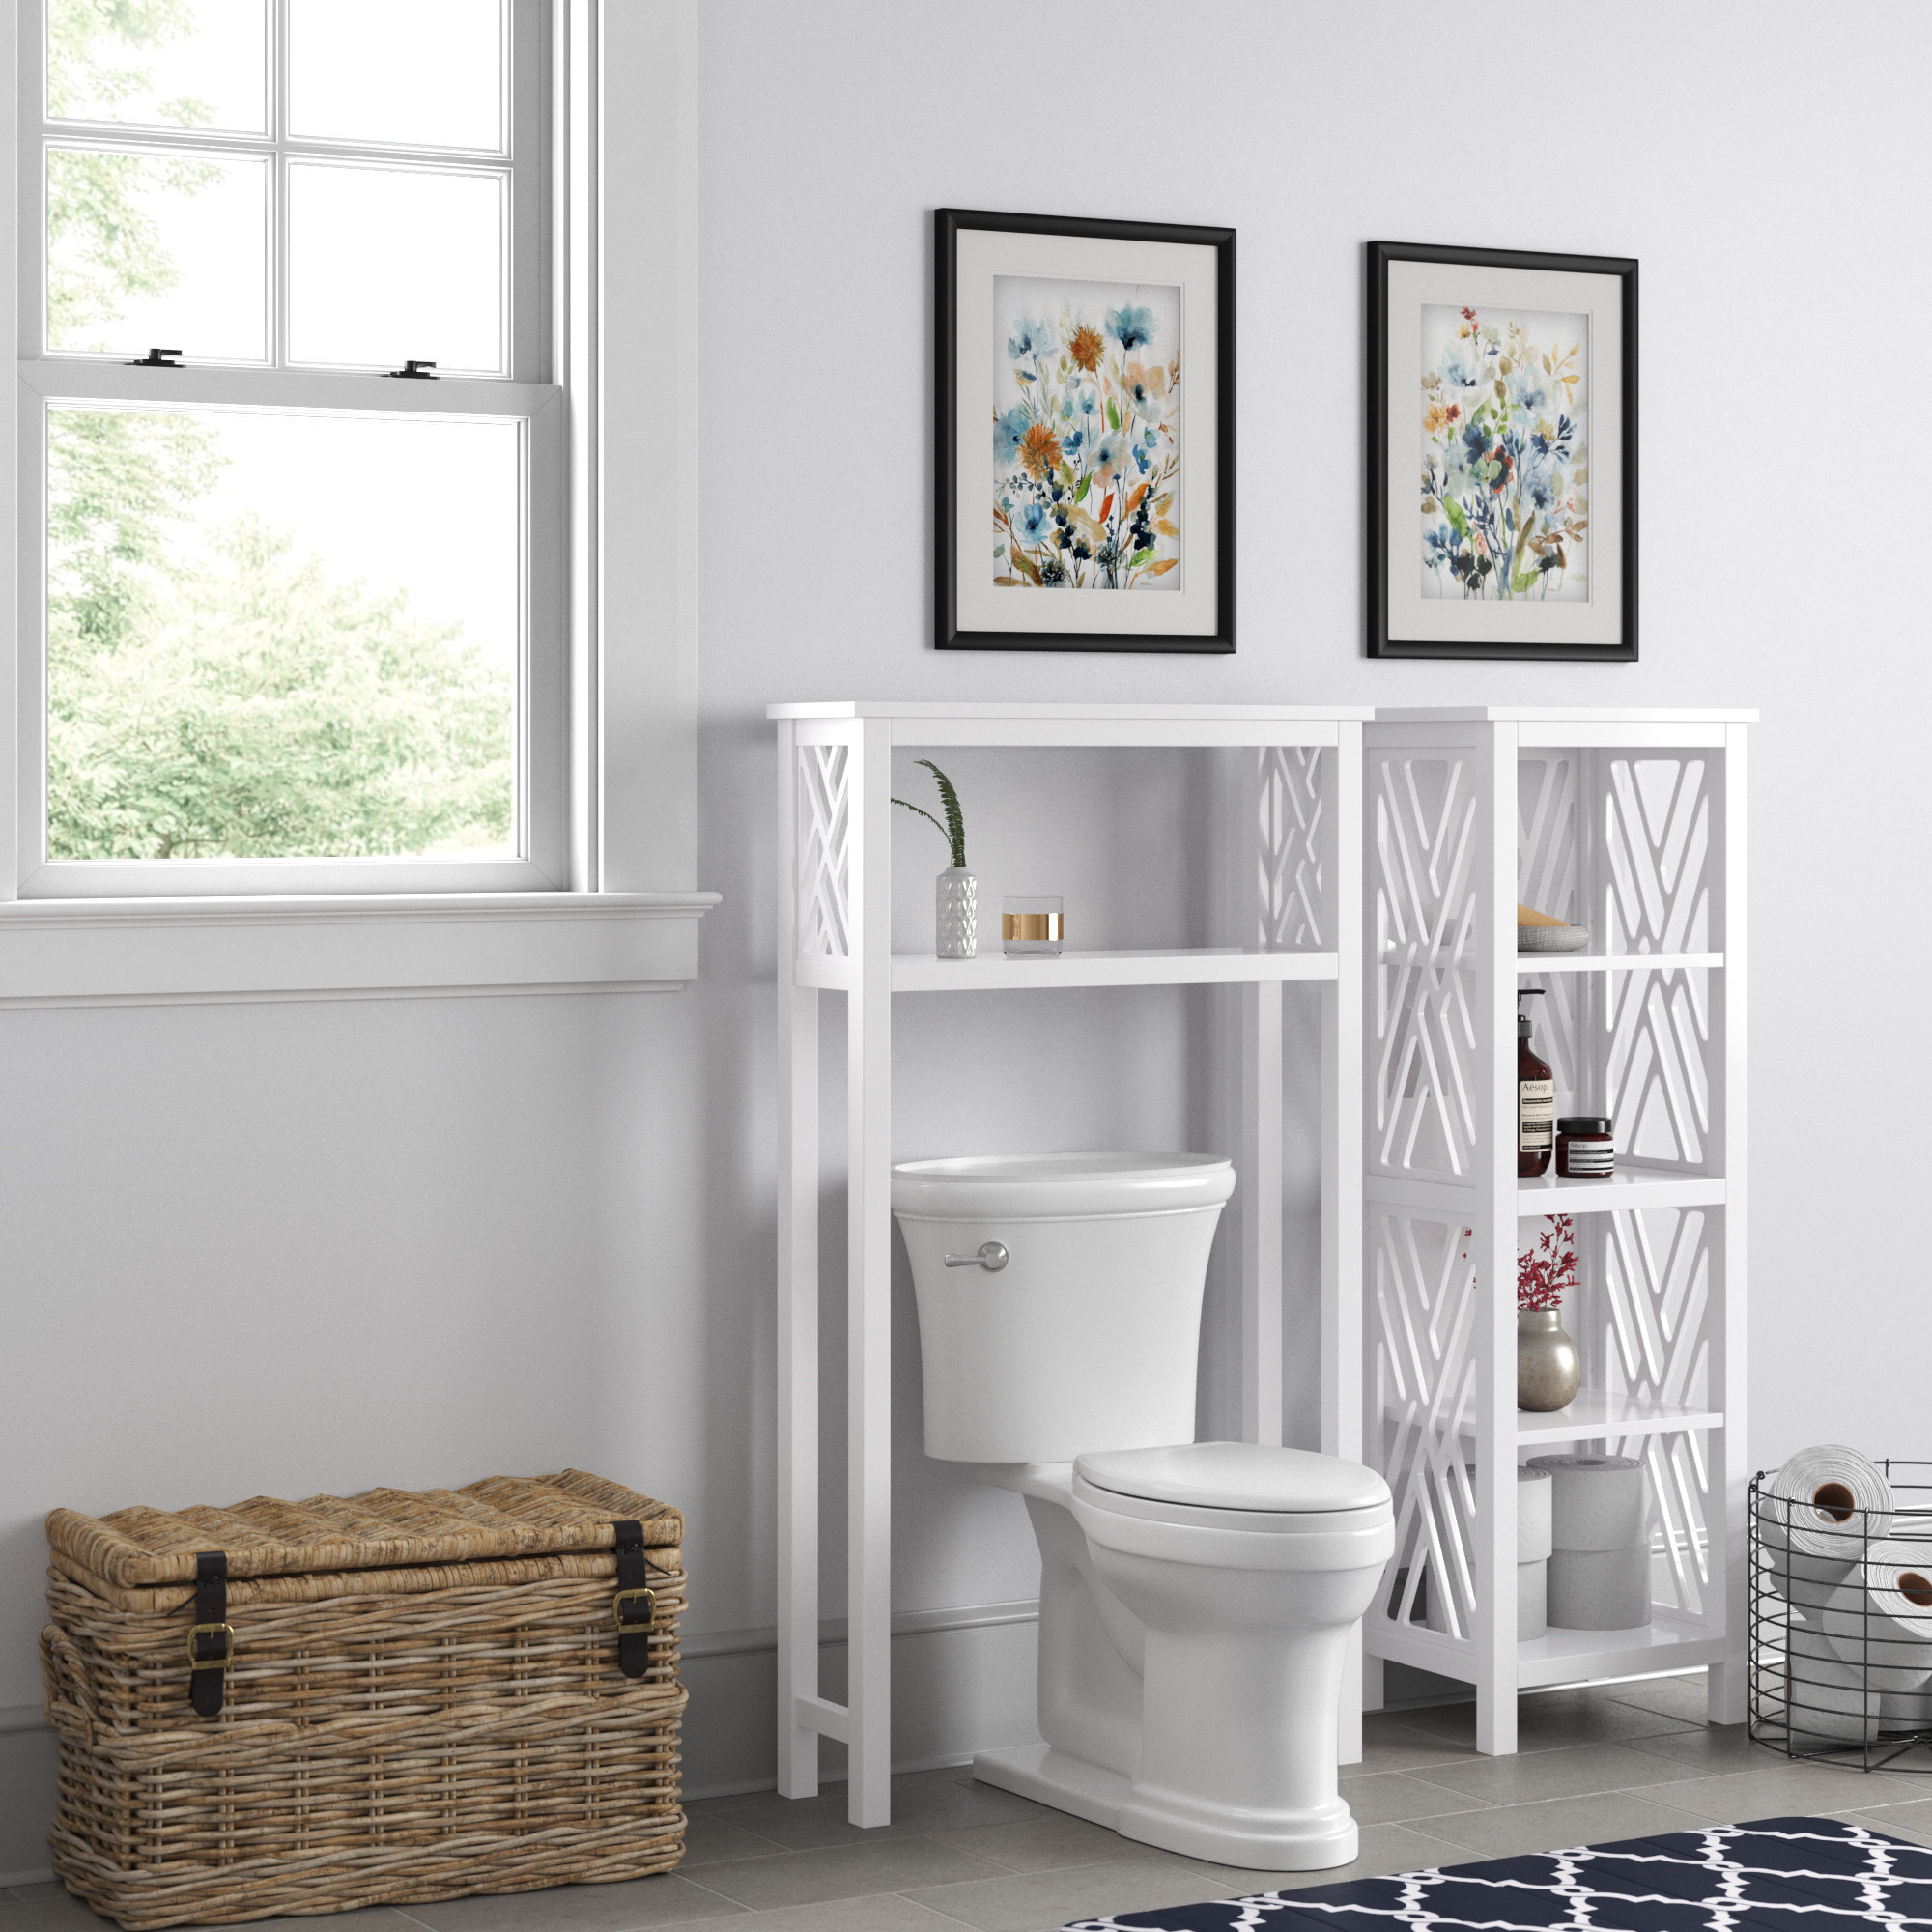 Mind Reader 3 Tier Toilet Rack, Bathroom Accessories Stand Storage